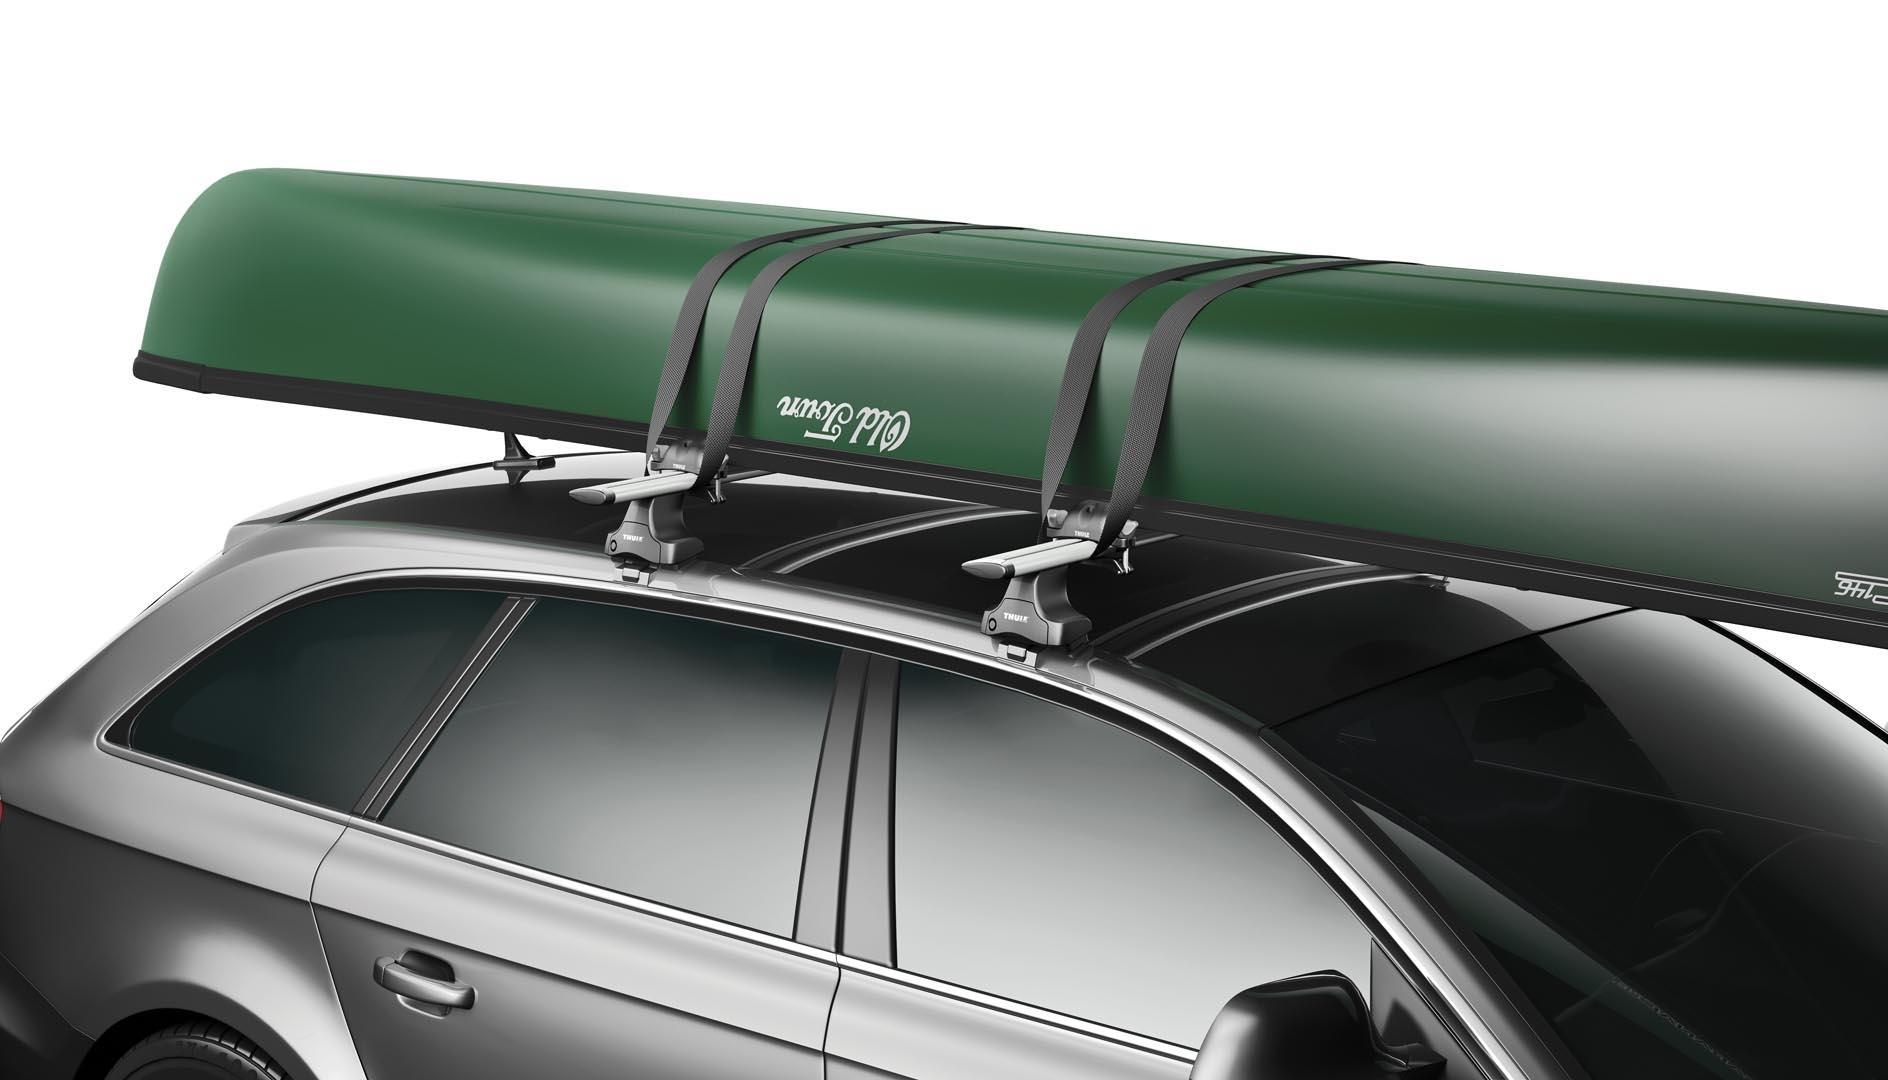 Kā nostiprināt dažādas kravas uz automašīnas jumta - vienkārši un ērti veidi